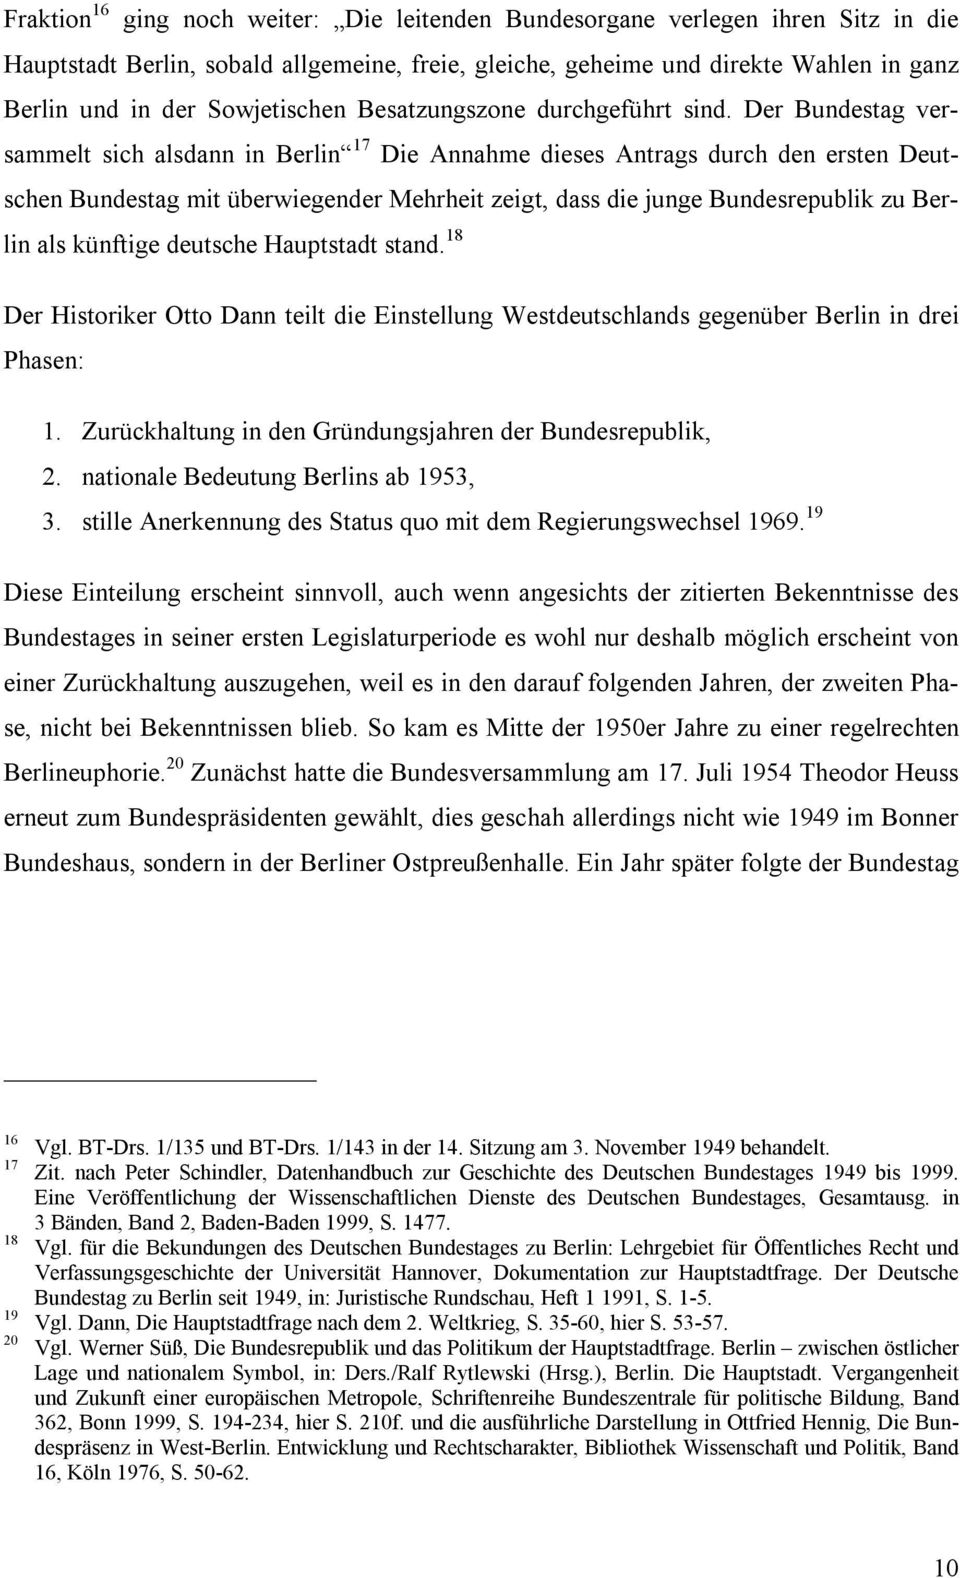 Der Bundestag versammelt sich alsdann in Berlin 17 Die Annahme dieses Antrags durch den ersten Deutschen Bundestag mit überwiegender Mehrheit zeigt, dass die junge Bundesrepublik zu Berlin als